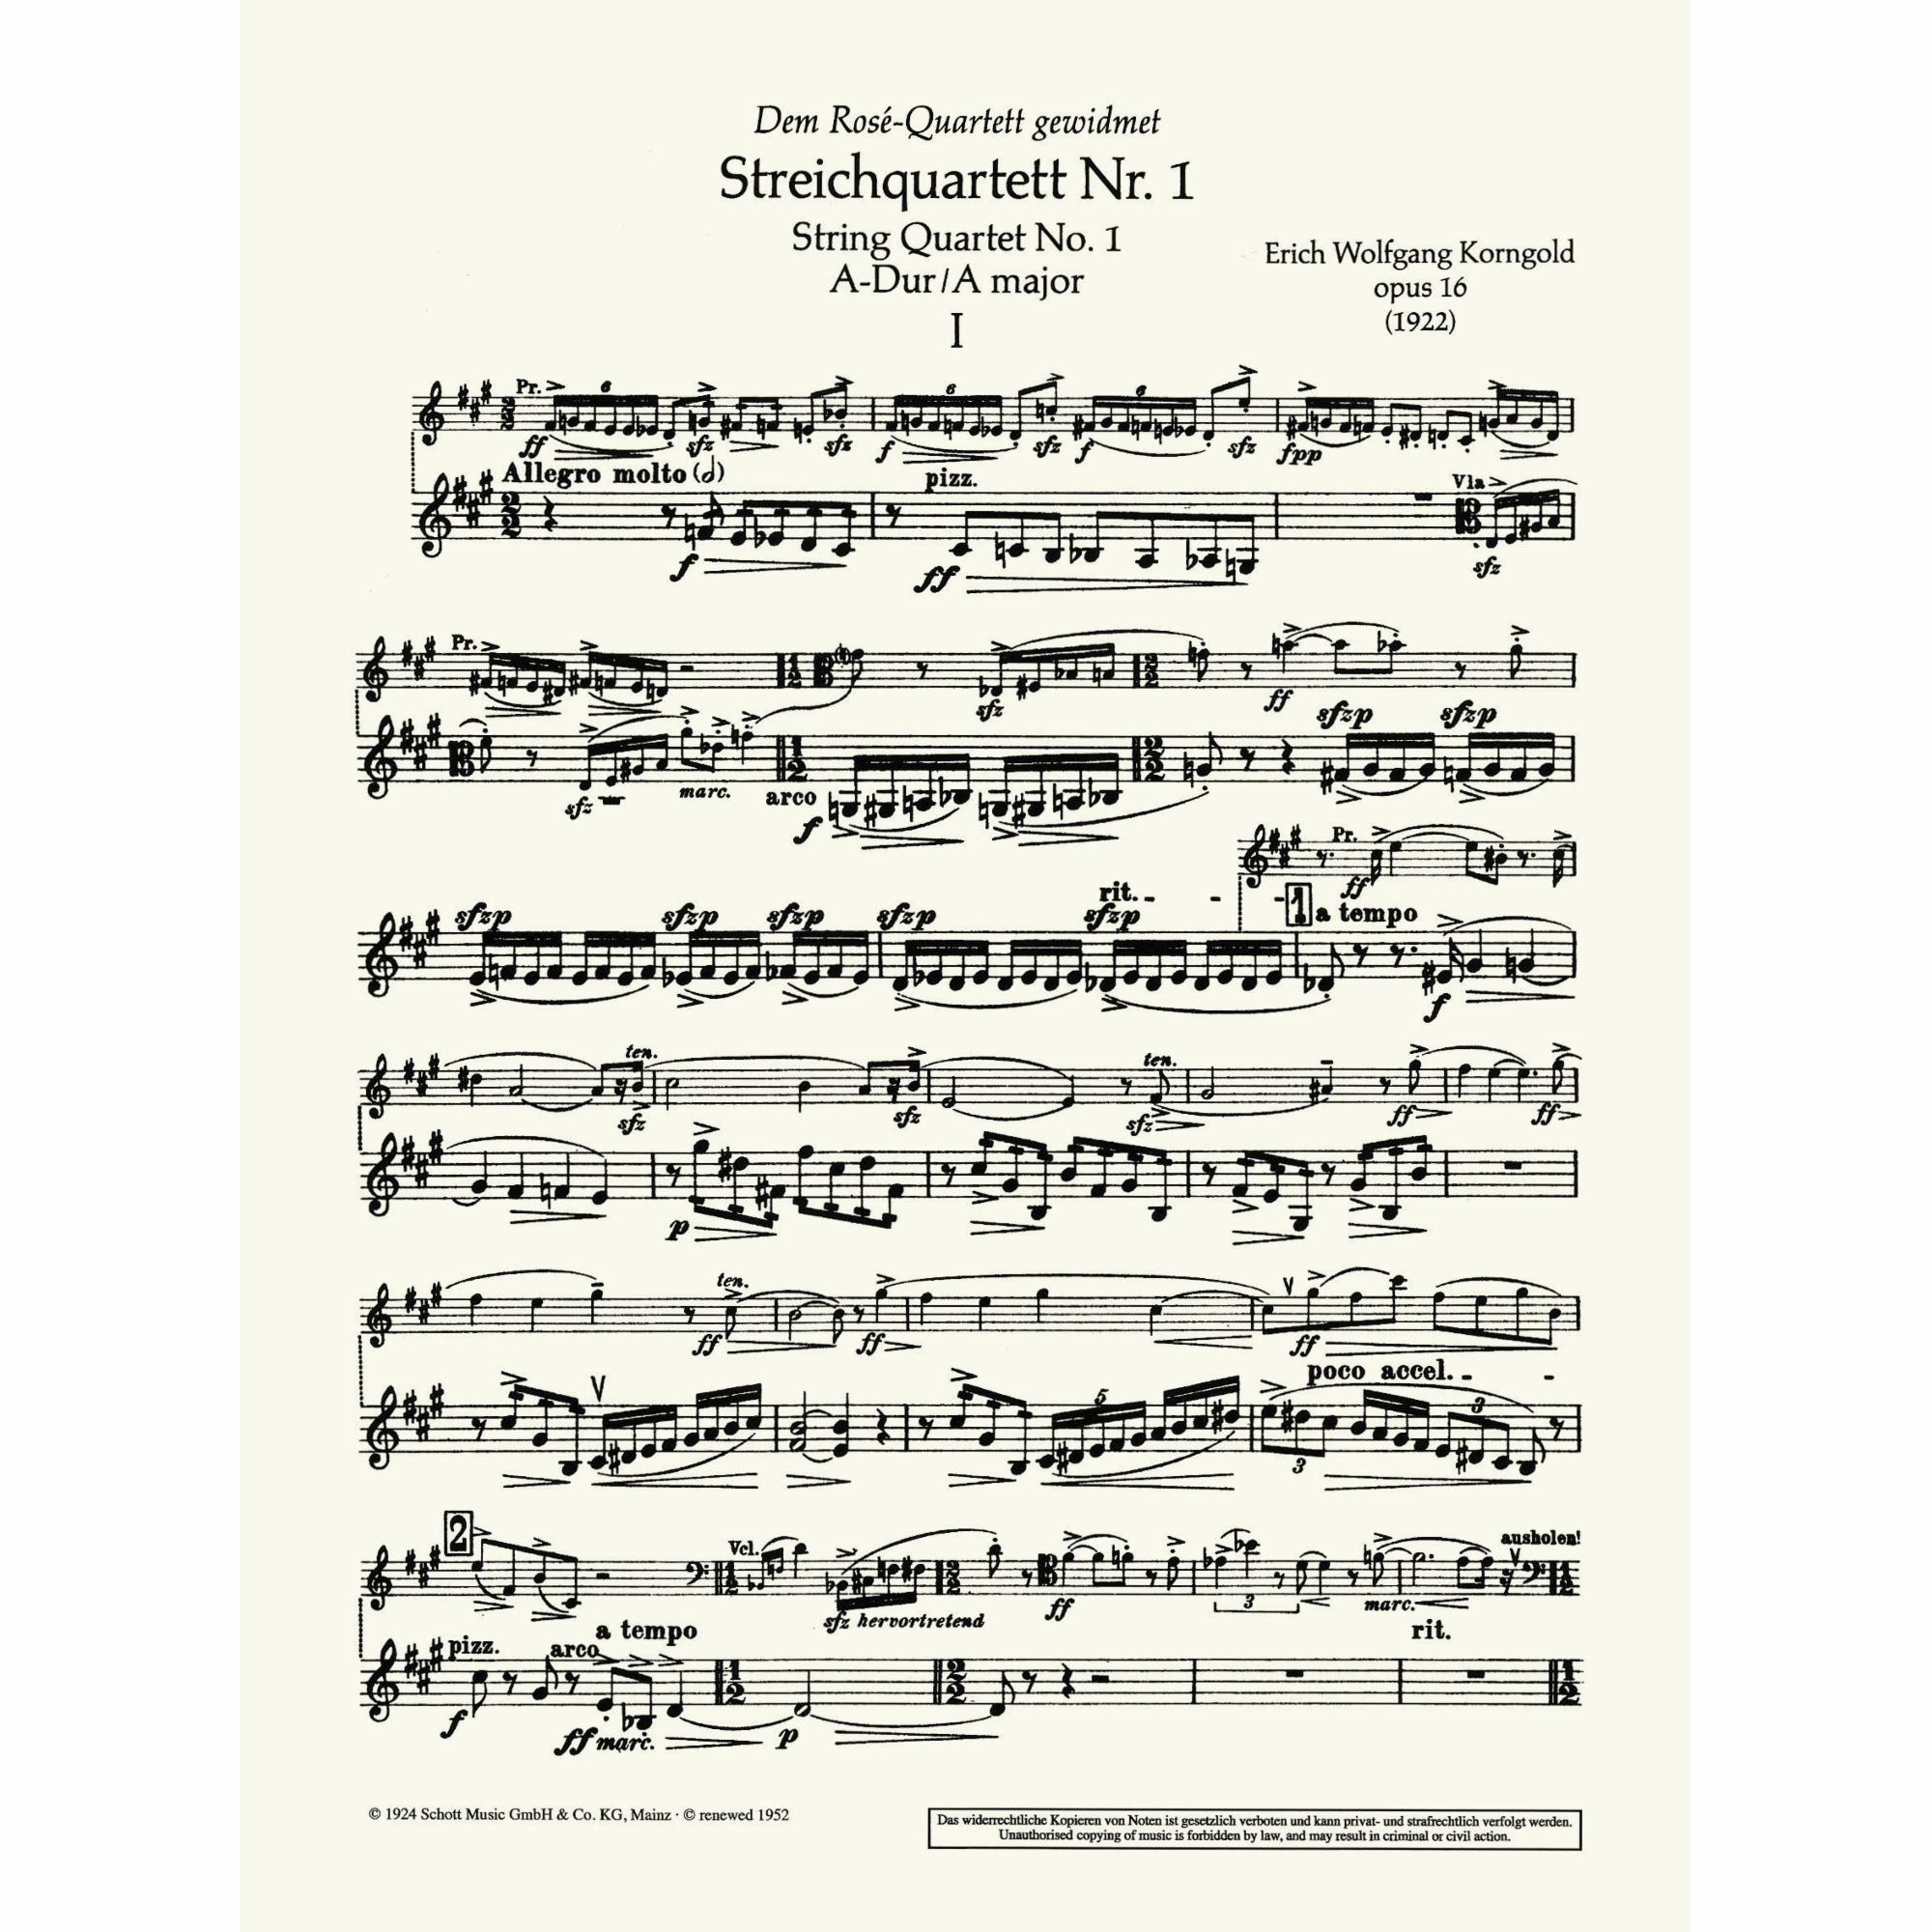 Sample: Violin II (Pg. 1)